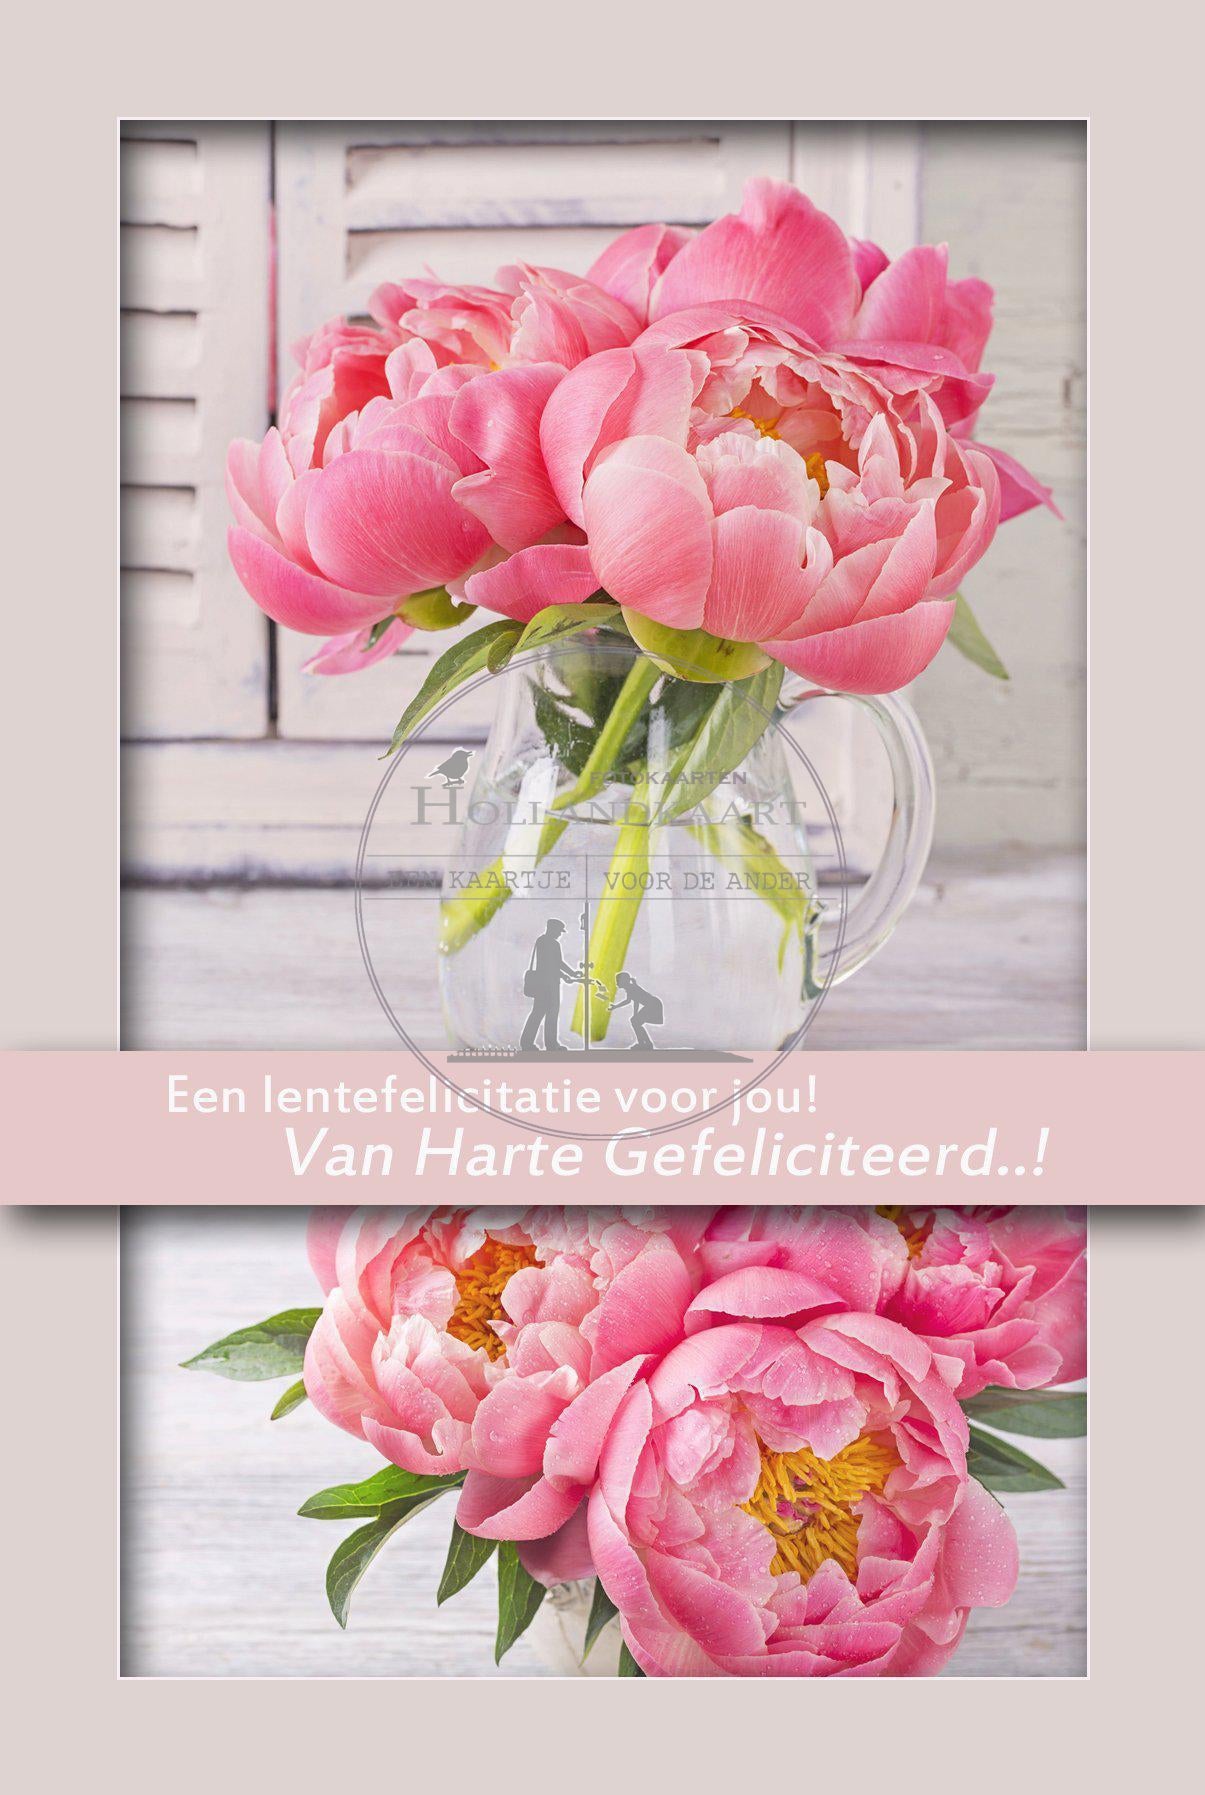 Felicitatiekaart / wenskaart - rood-roze bloemen